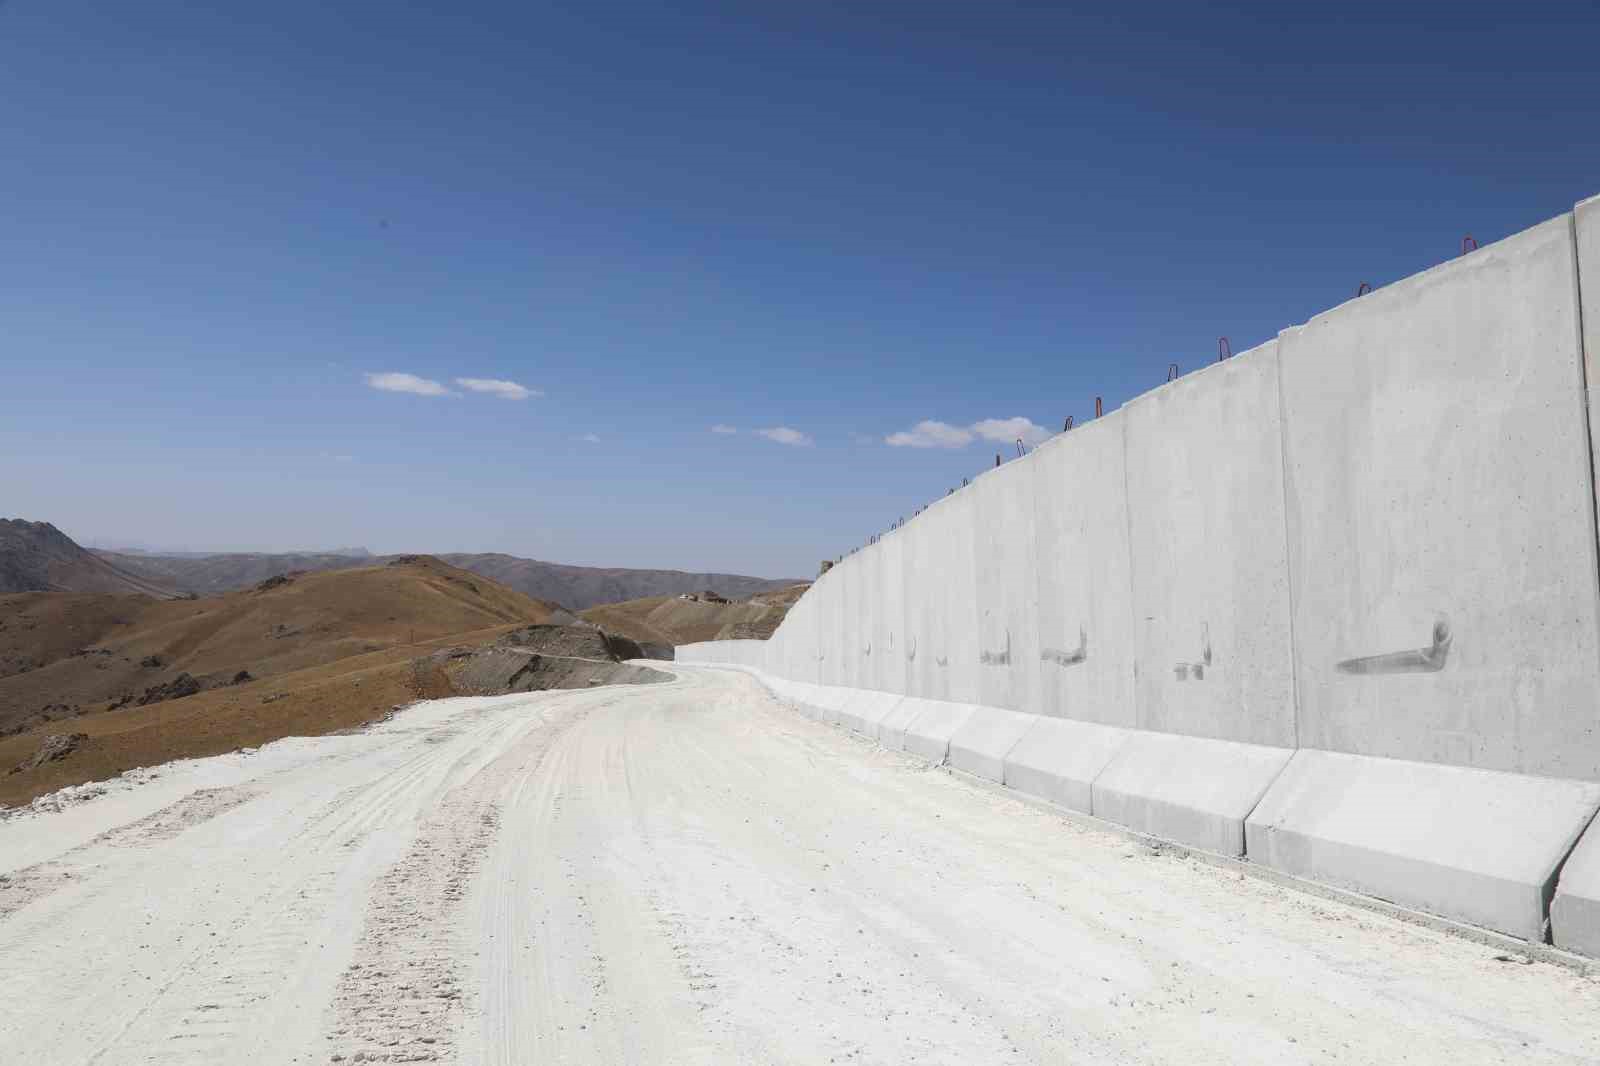 Van-İran sınırında güvenlik duvarı çalışmaları devam ediyor